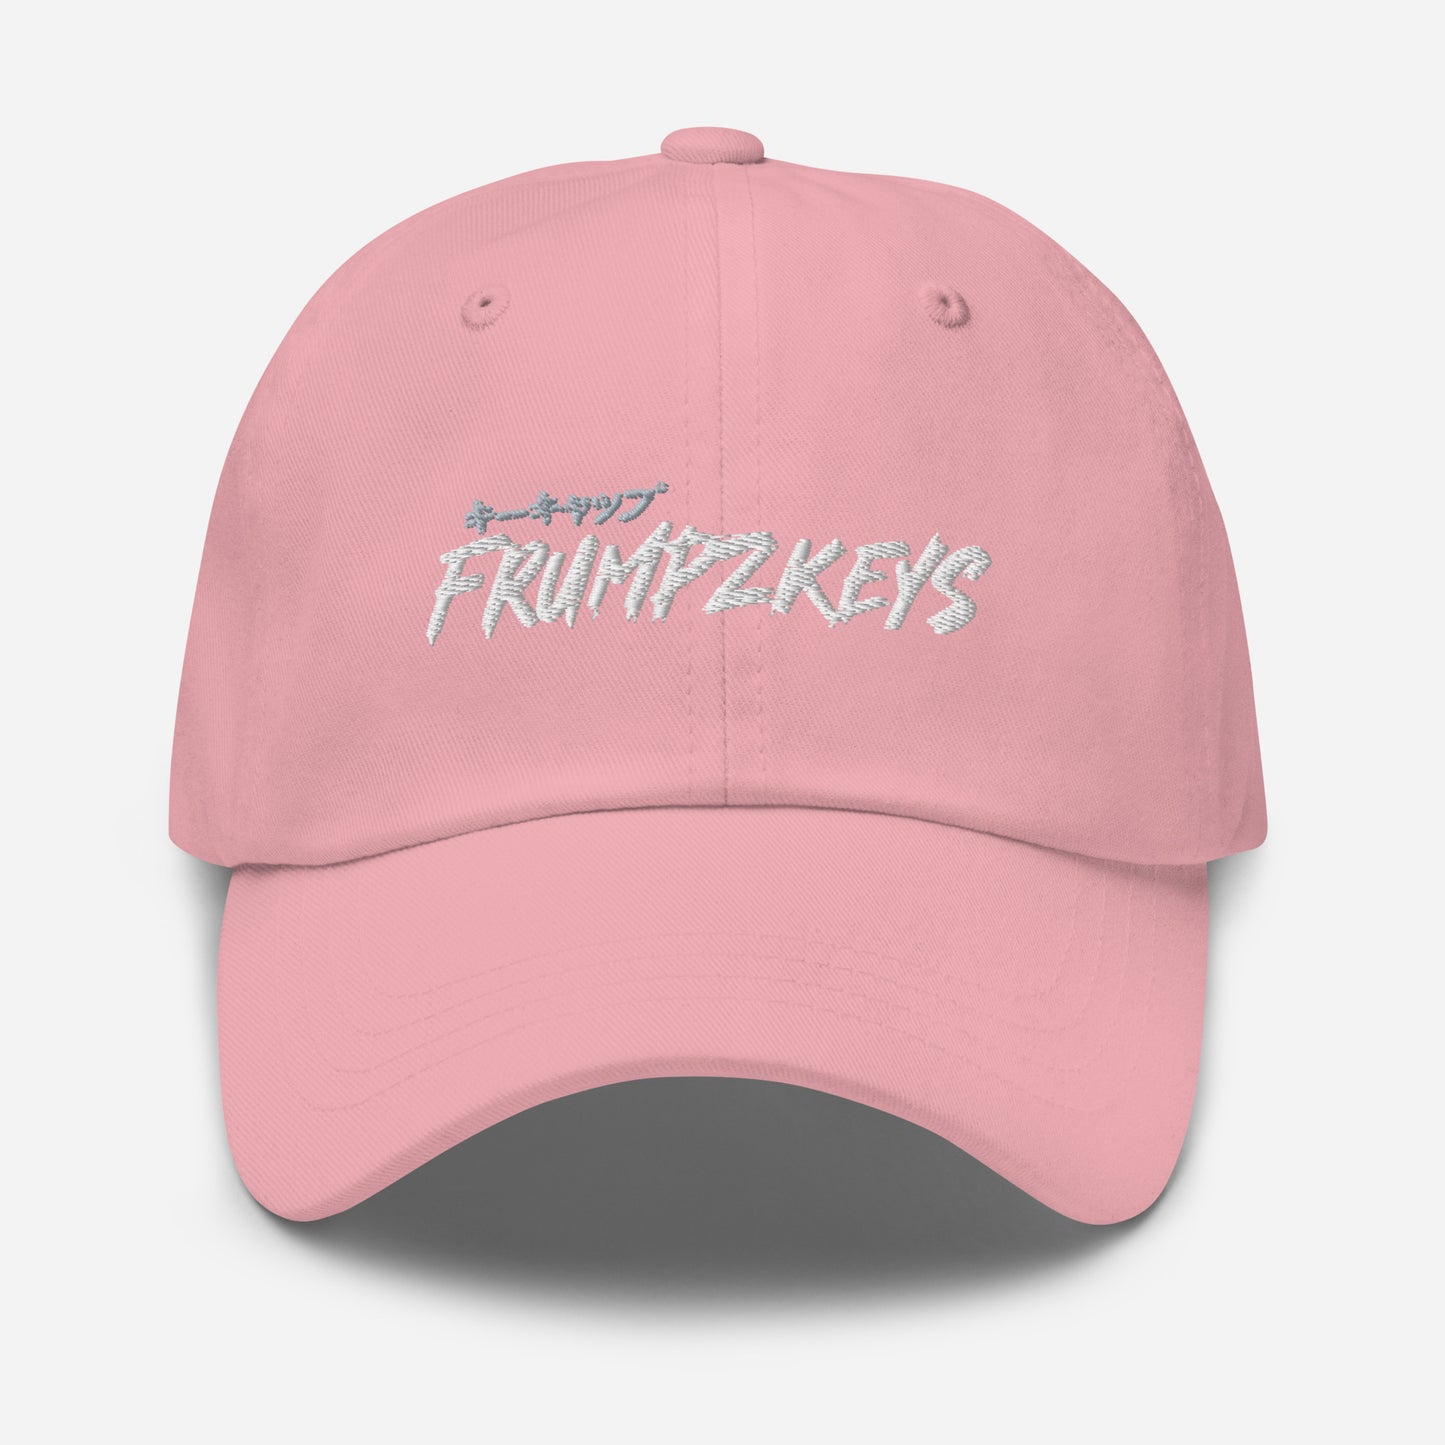 FRUMZPKEYS Dad Hat